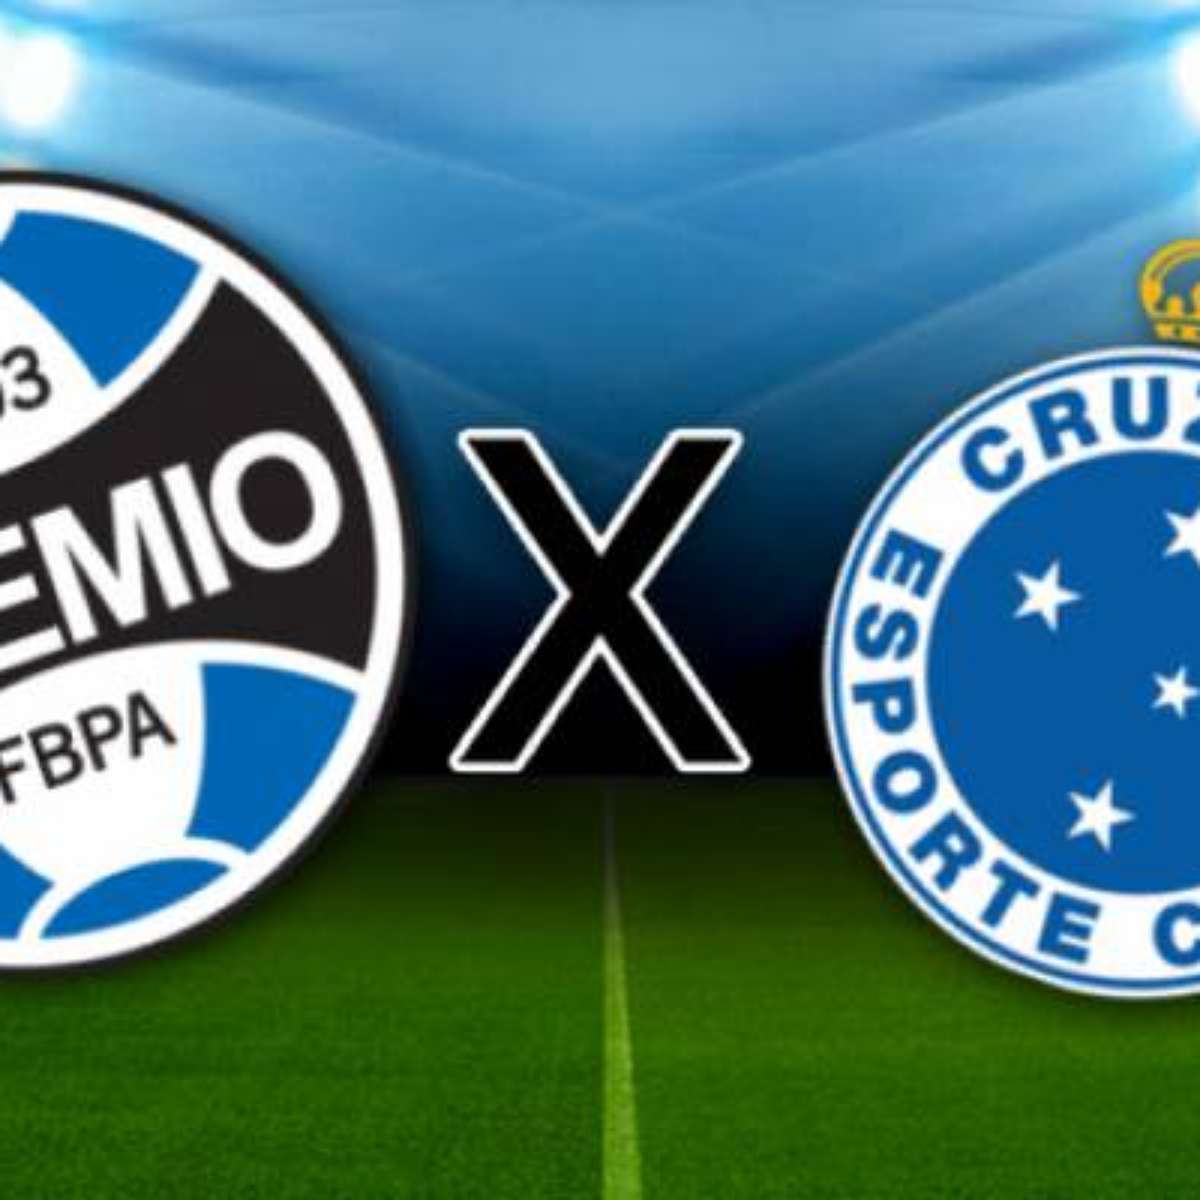 Cruzeiro vs America MG: A Classic Rivalry in Brazilian Football